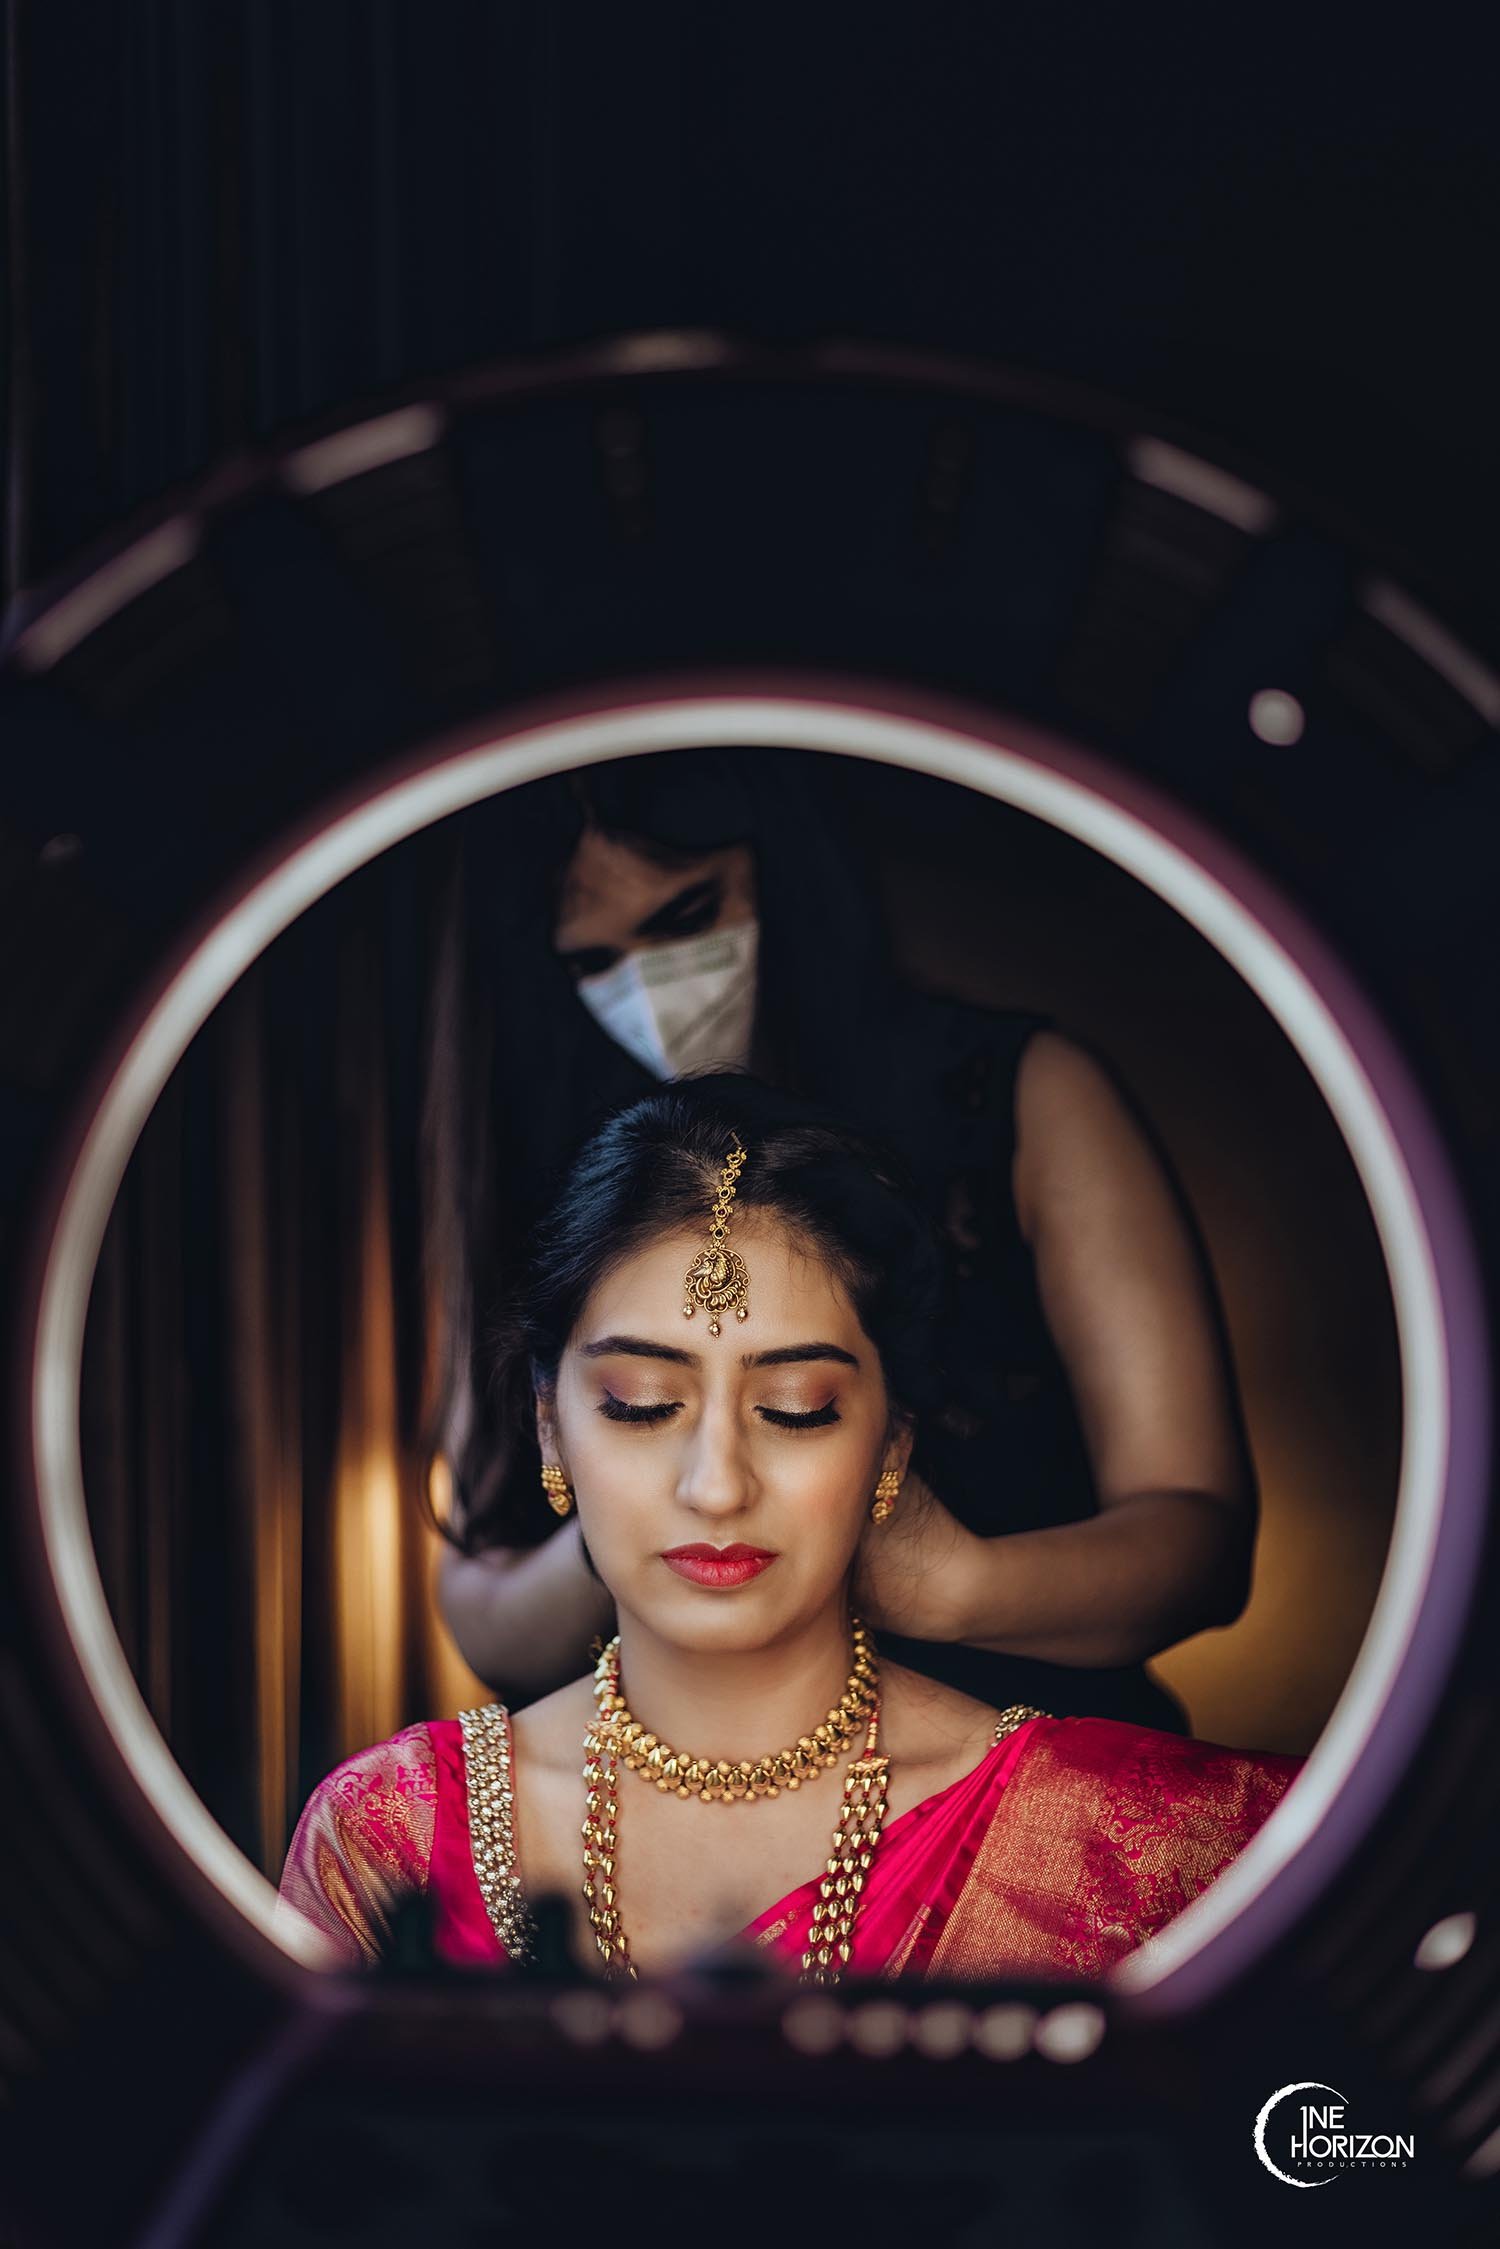 My Marathi Mulgi look | Wedding poses, Style, Nature photography